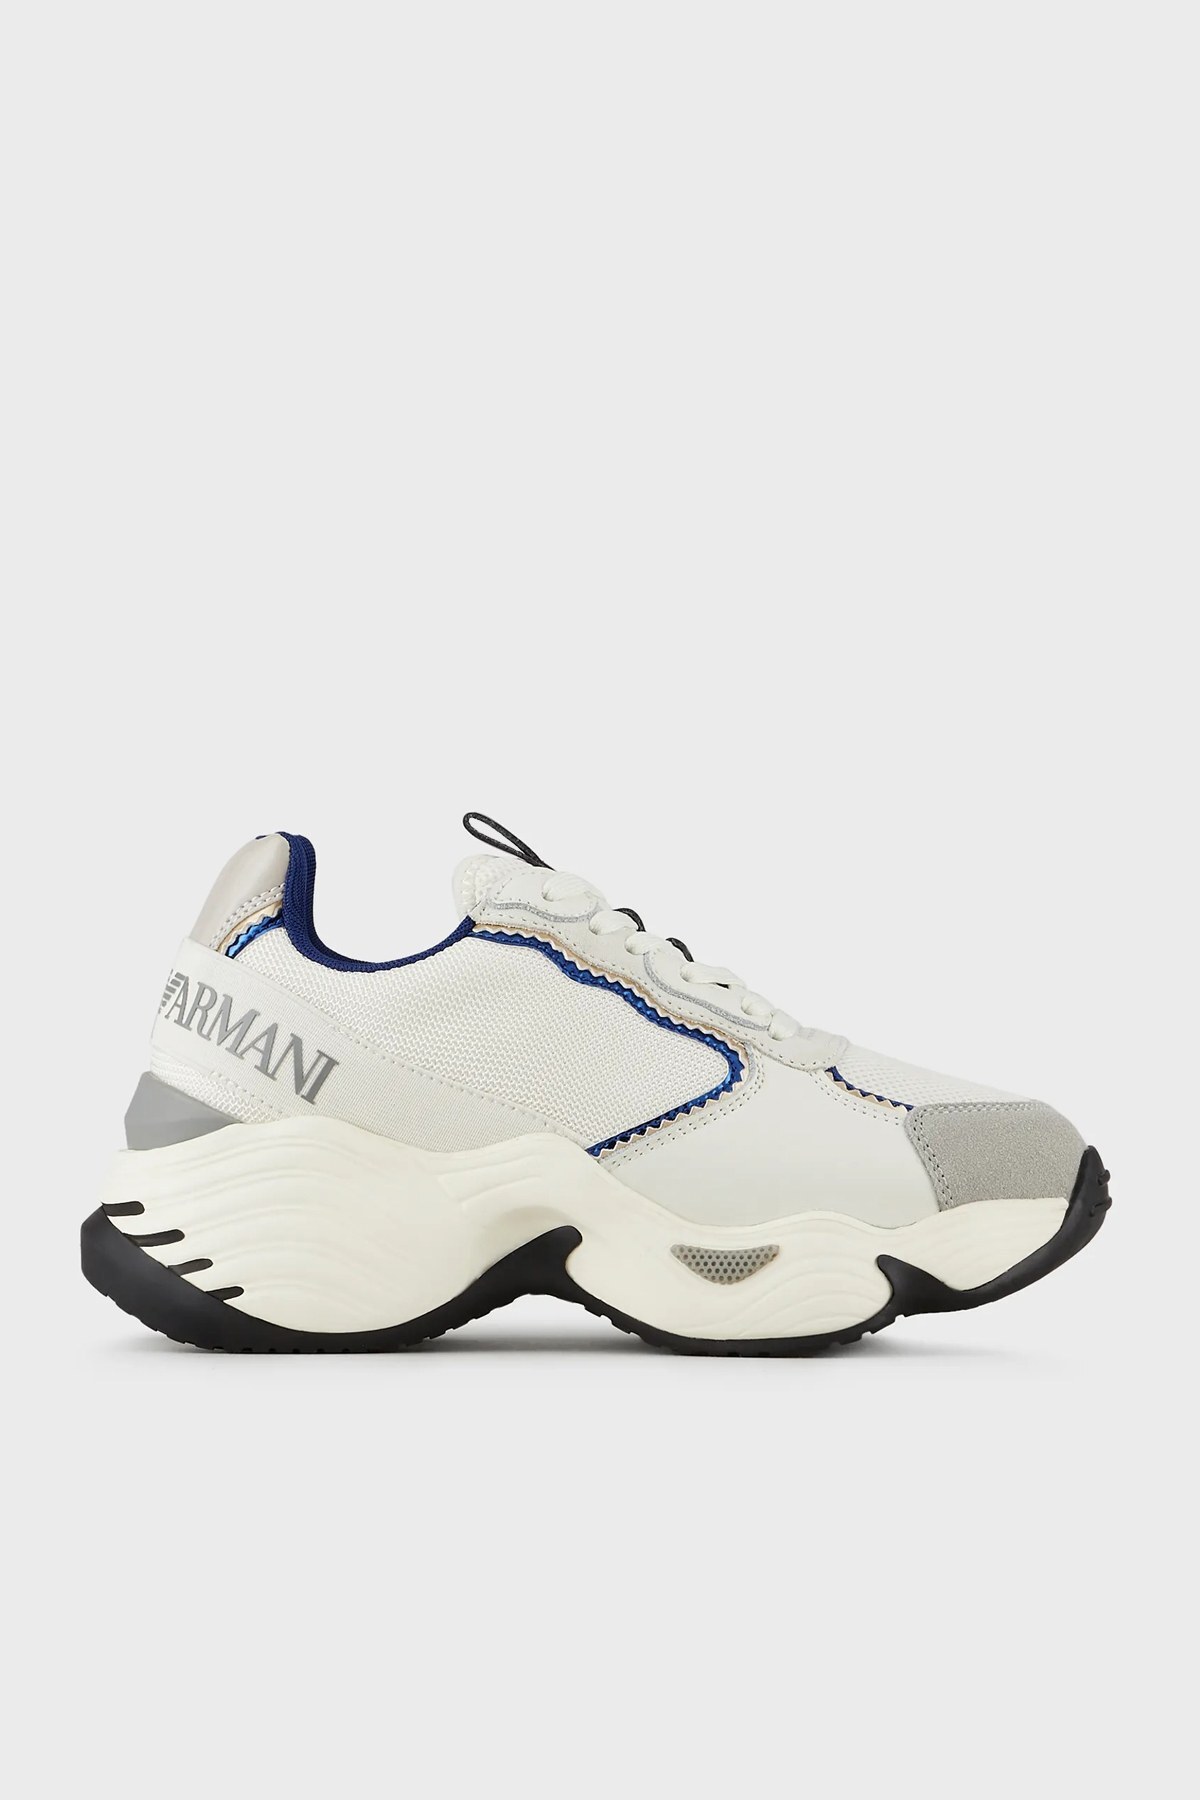 Emporio Armani Kalın Tabanlı Sneaker Bayan Ayakkabı S X3X140 XM059 Q520 KREM-LACIVERT